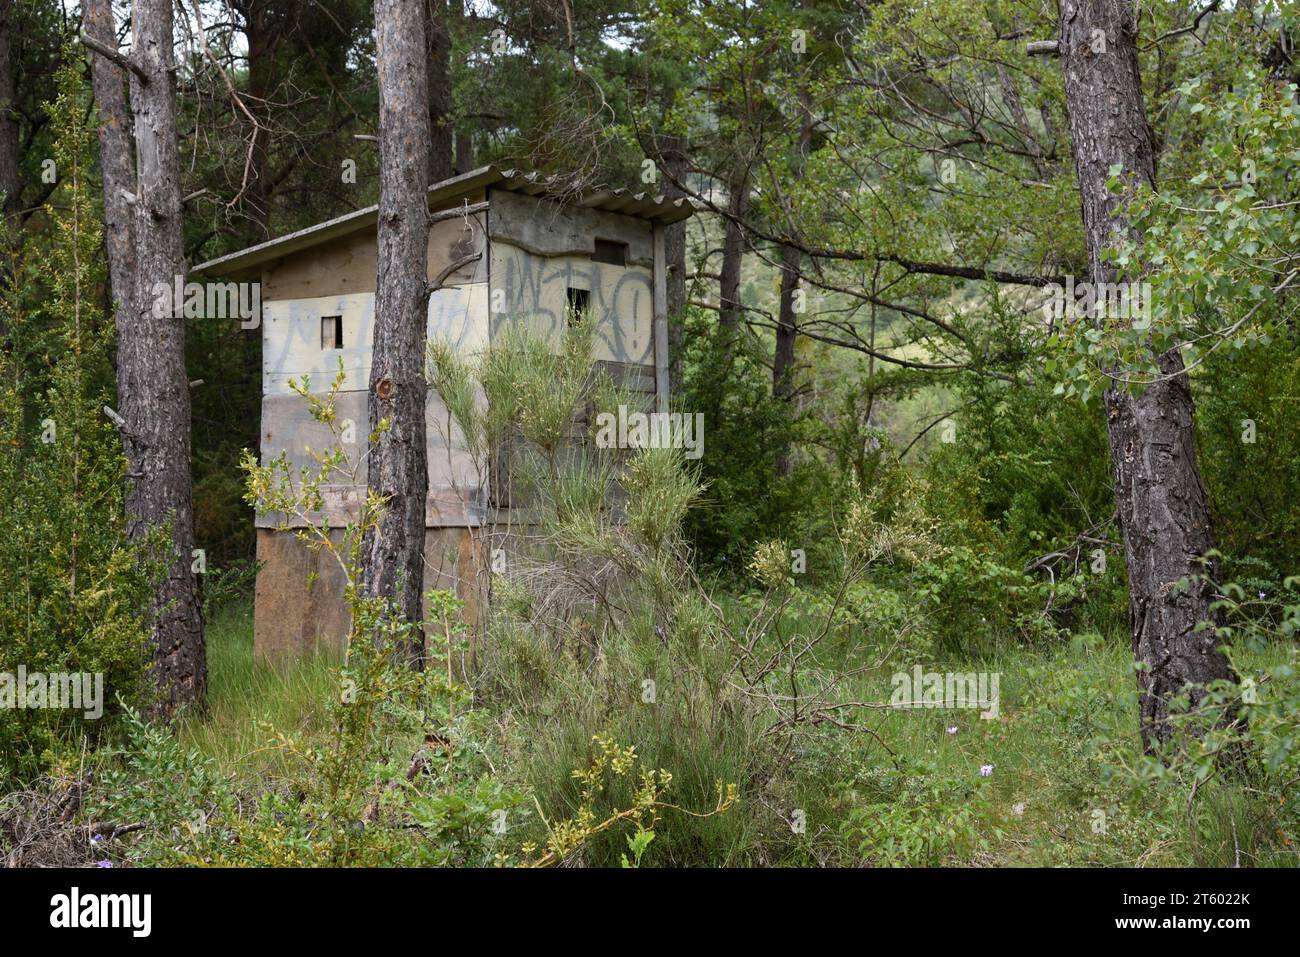 Un aveugle de chasse en bois caché, caché ou camouflé, Hunters Hut, Shooting Hide, Shed ou Machan dans la forêt France Banque D'Images